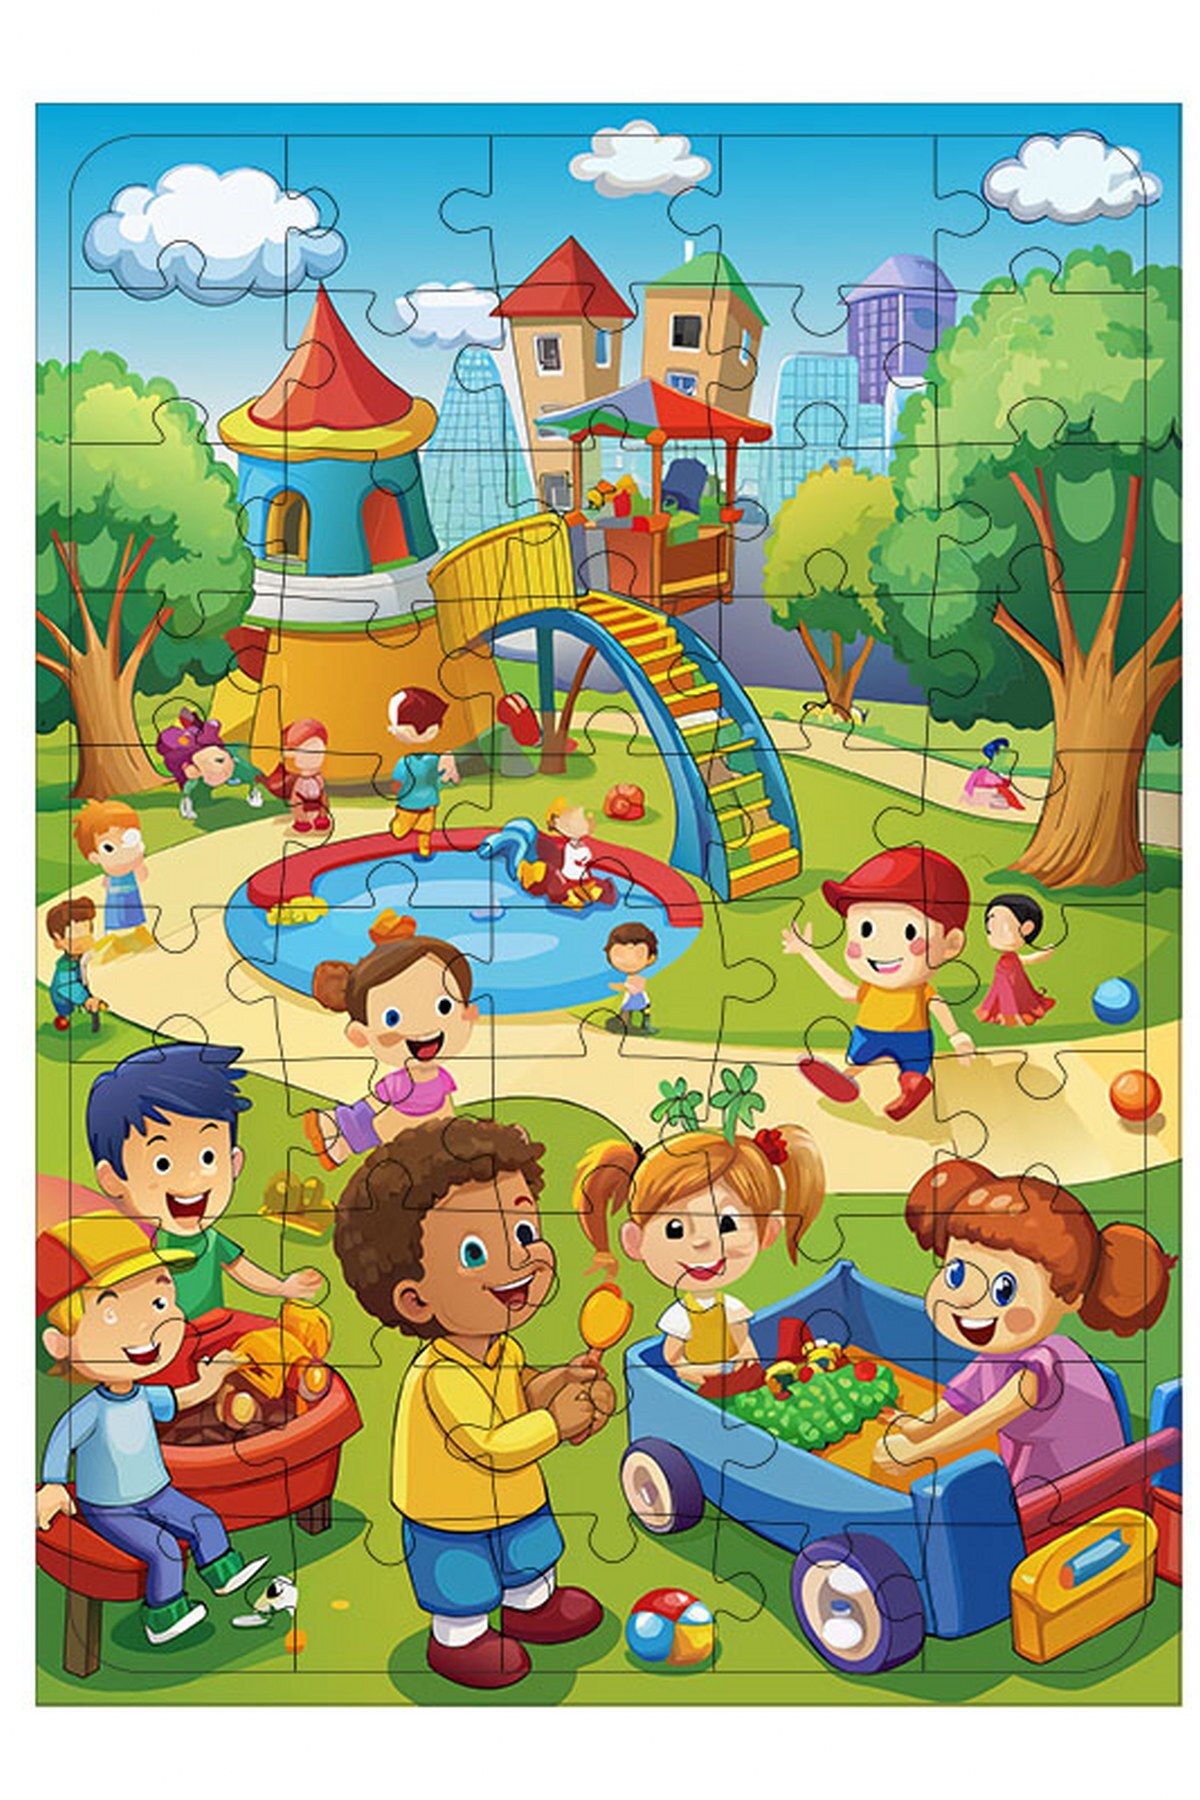 Tablomega Ahşap Mdf Puzzle Yapboz Parktaki Neşeli Çocuklar 50 Parça 35*50 cm